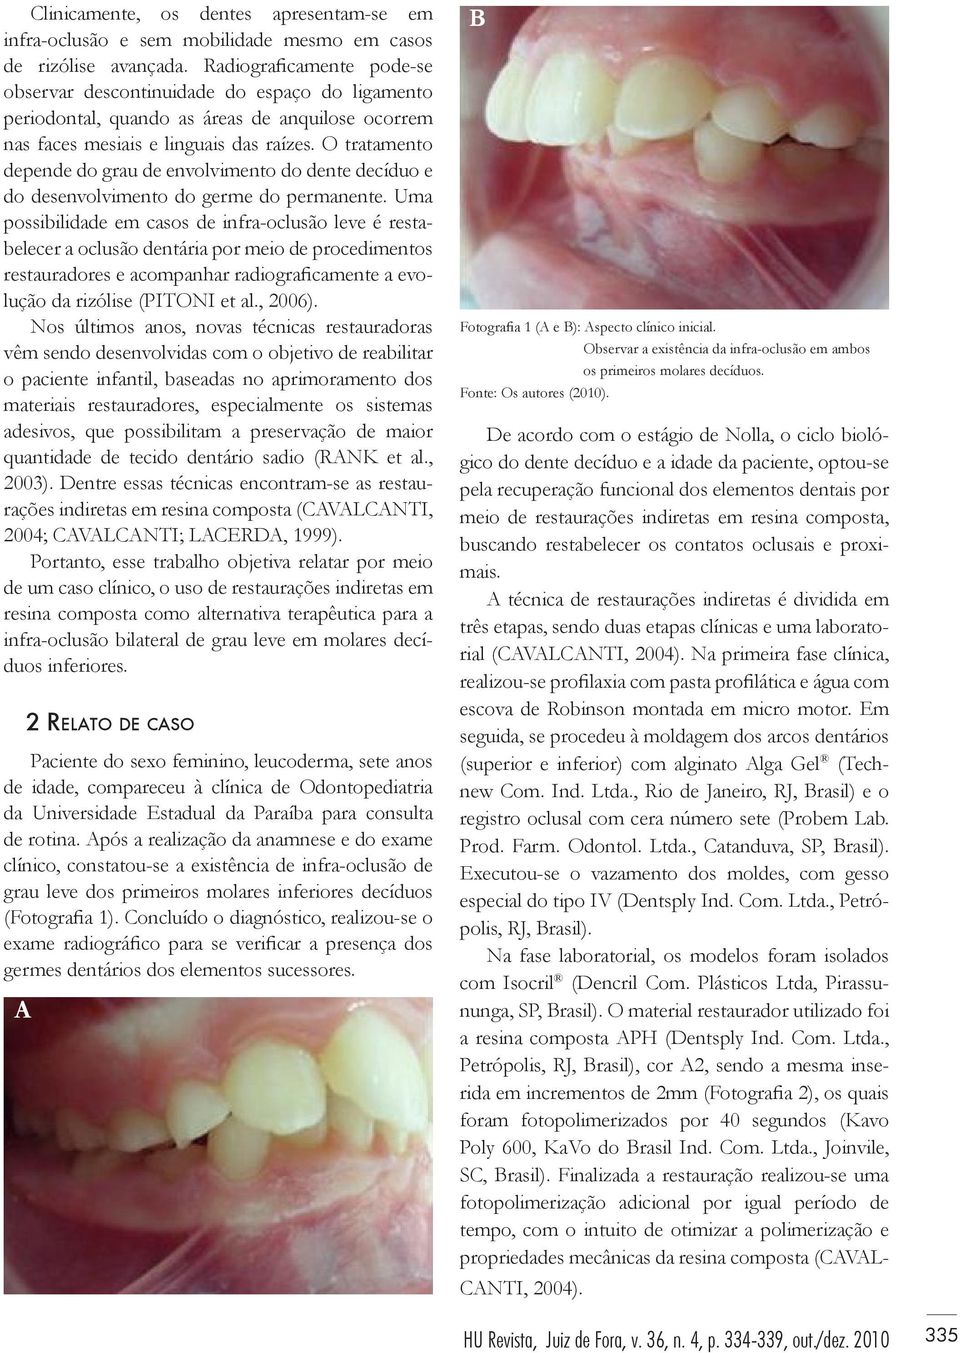 O tratamento depende do grau de envolvimento do dente decíduo e do desenvolvimento do germe do permanente.